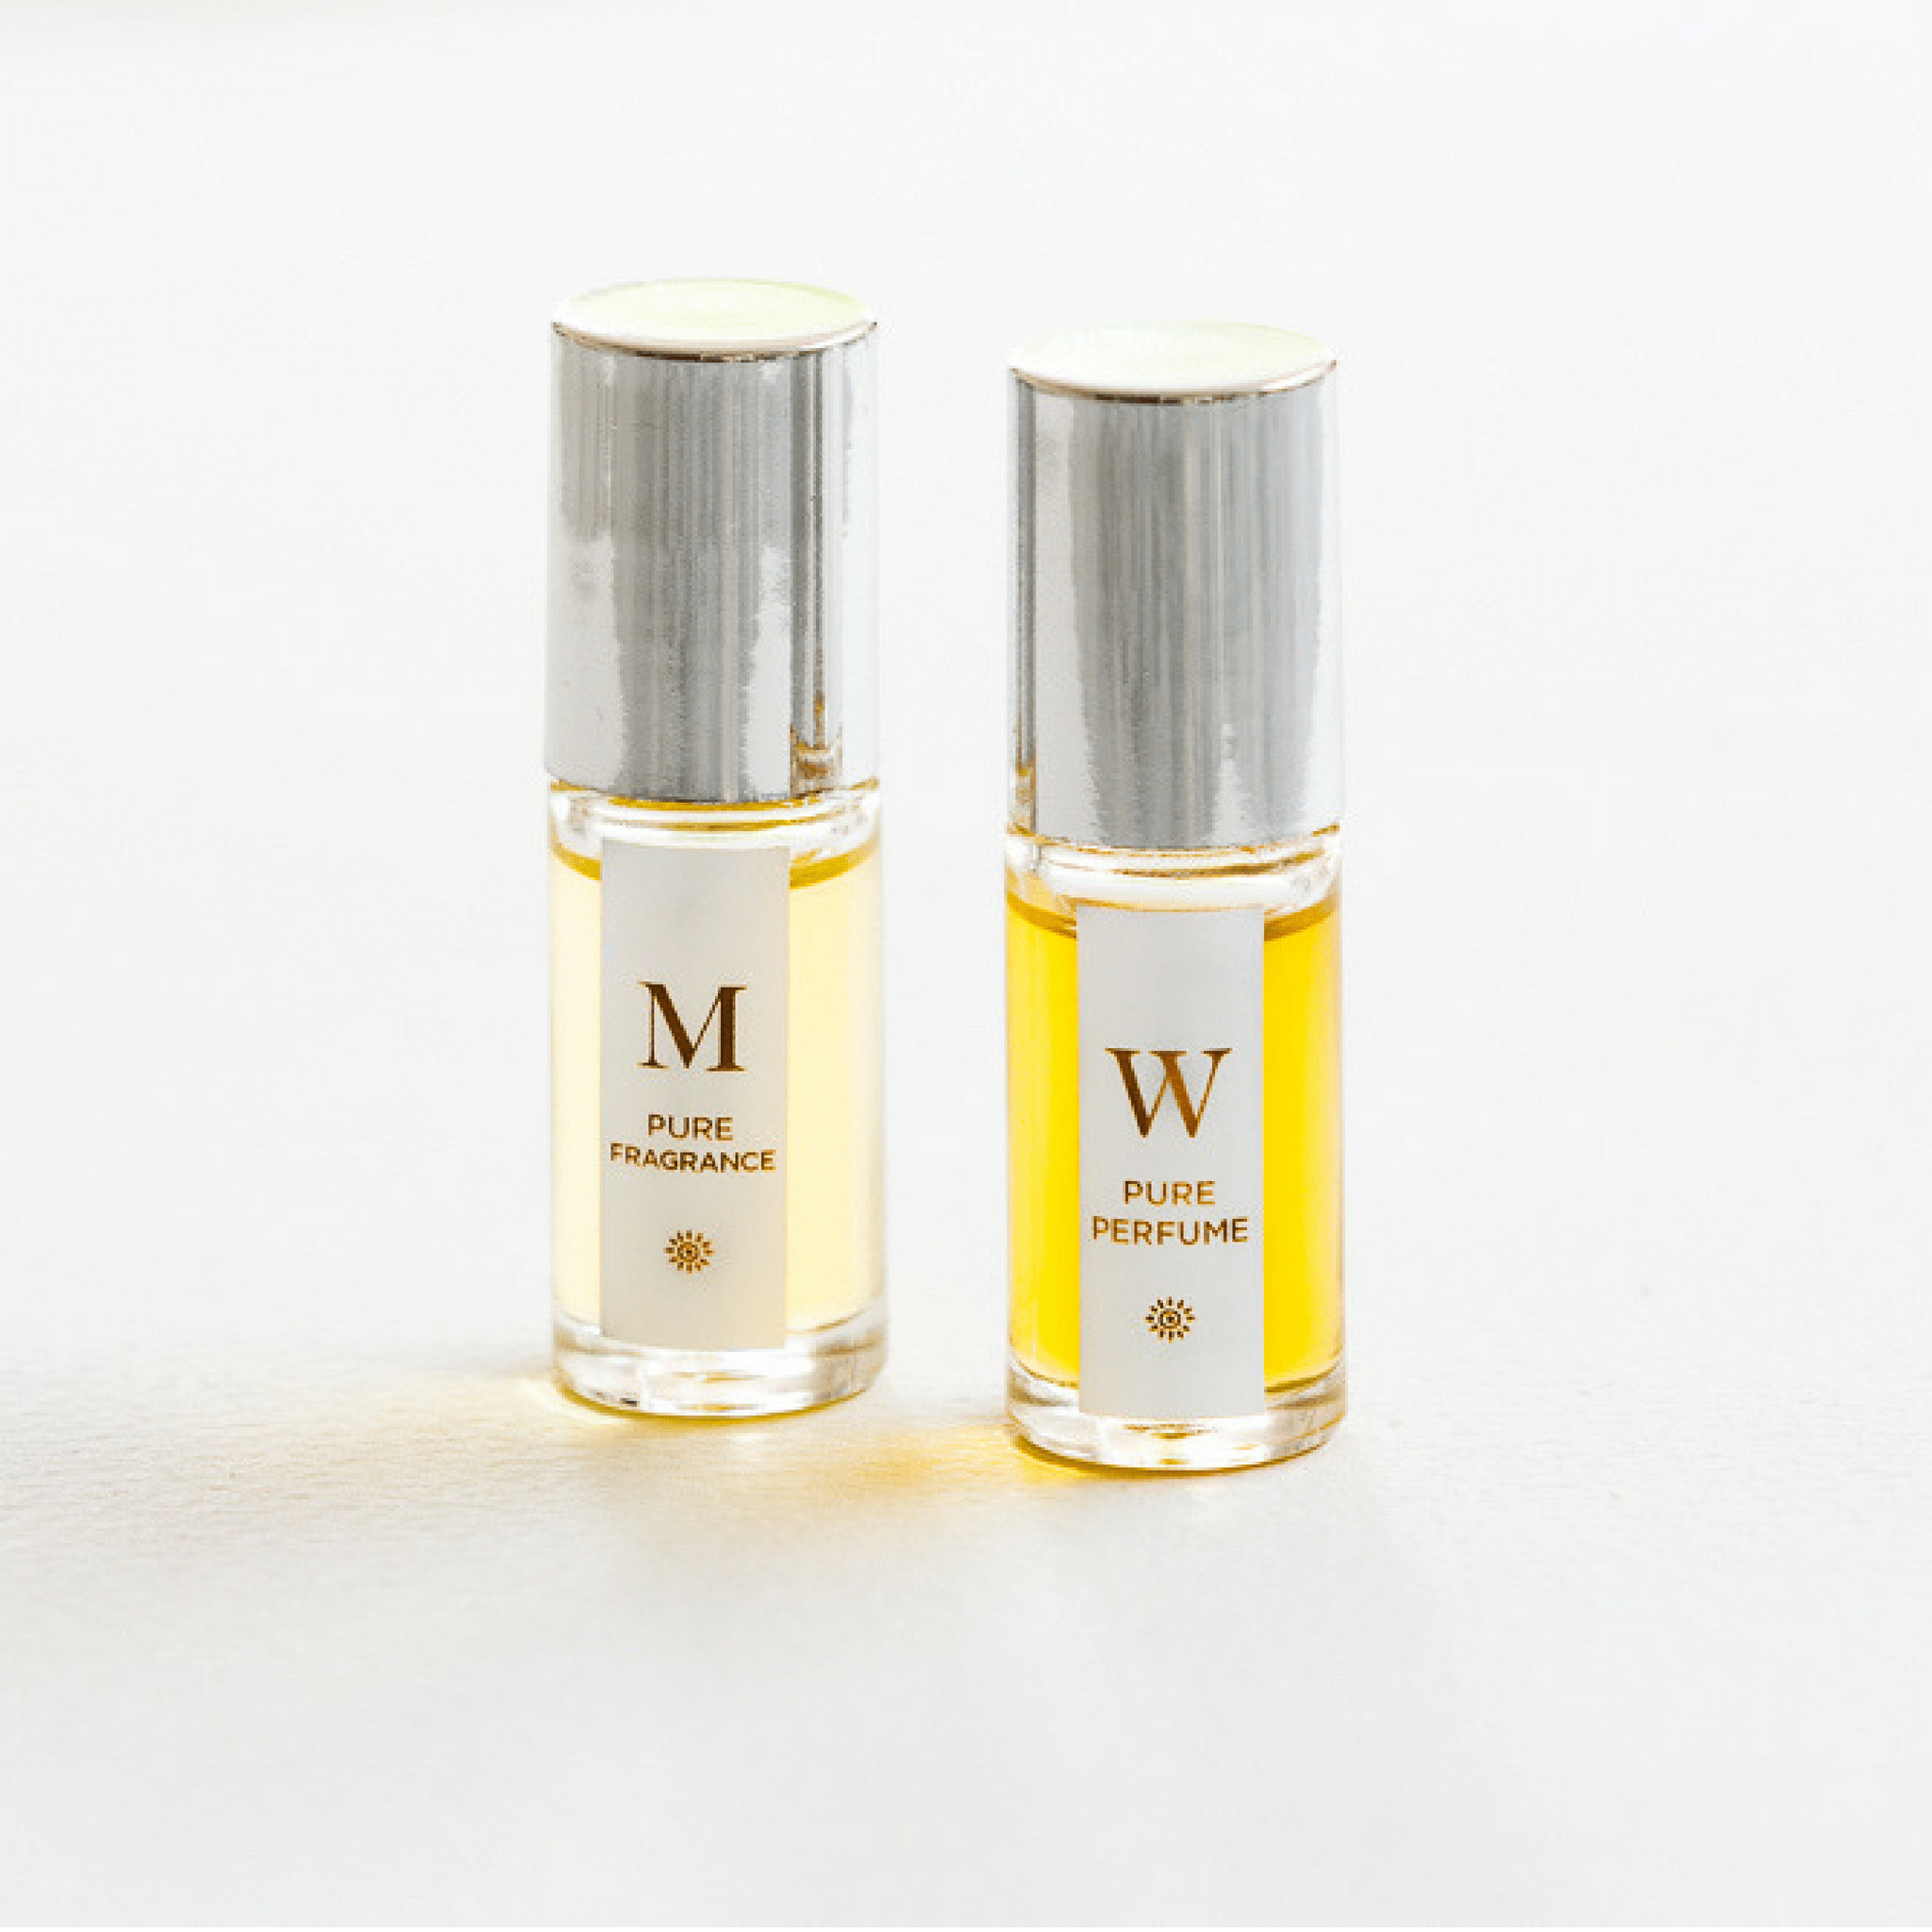 W. Pure Perfume Oil for Women | Mauli Rituals